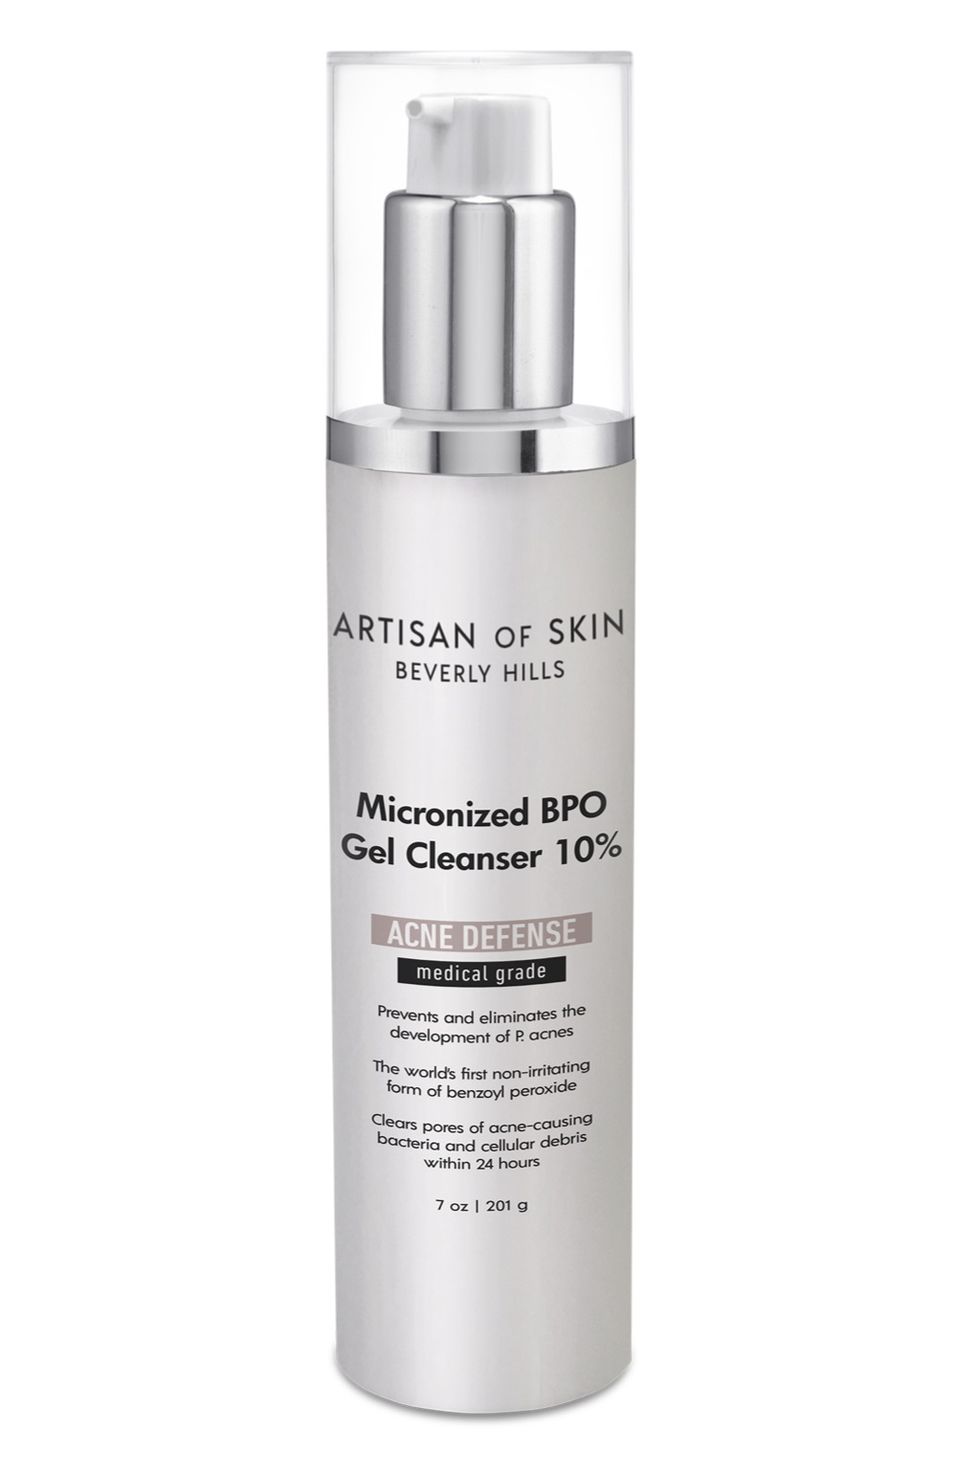 Artisan of Skin Micronized BPO Gel Cleanser 10%